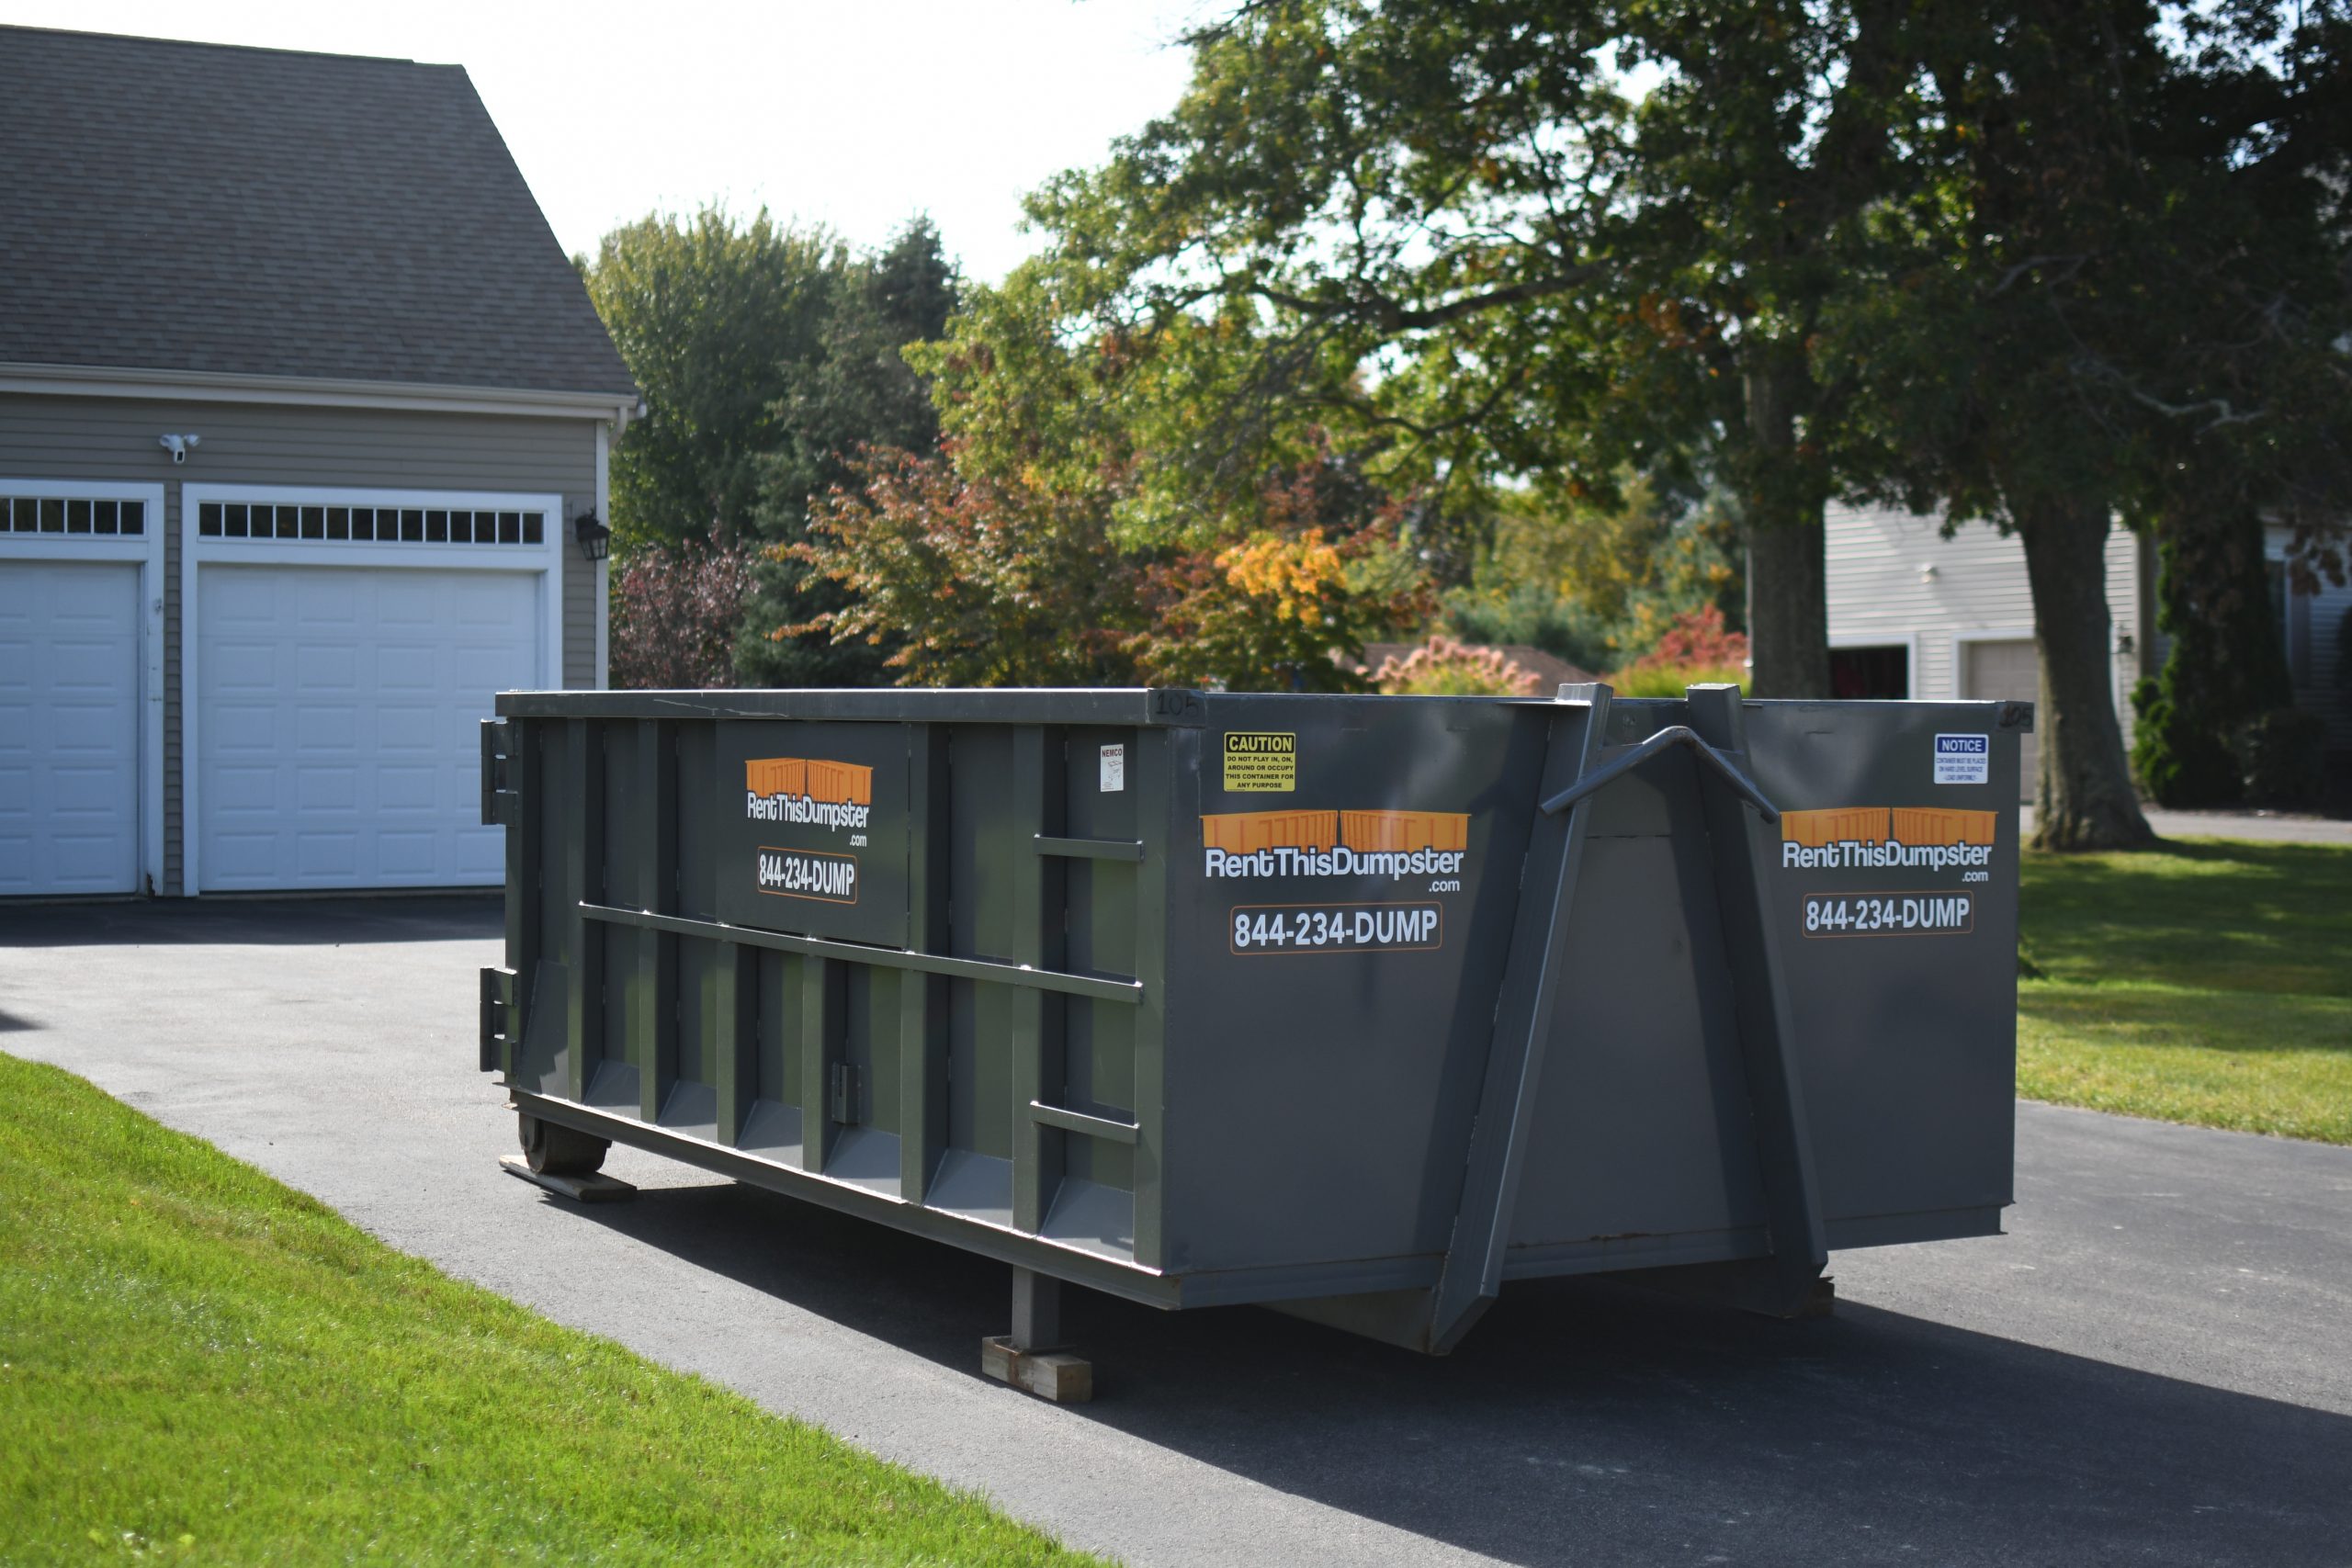 Dumpster Rental for Avon Massachusetts | Rent This Dumpster